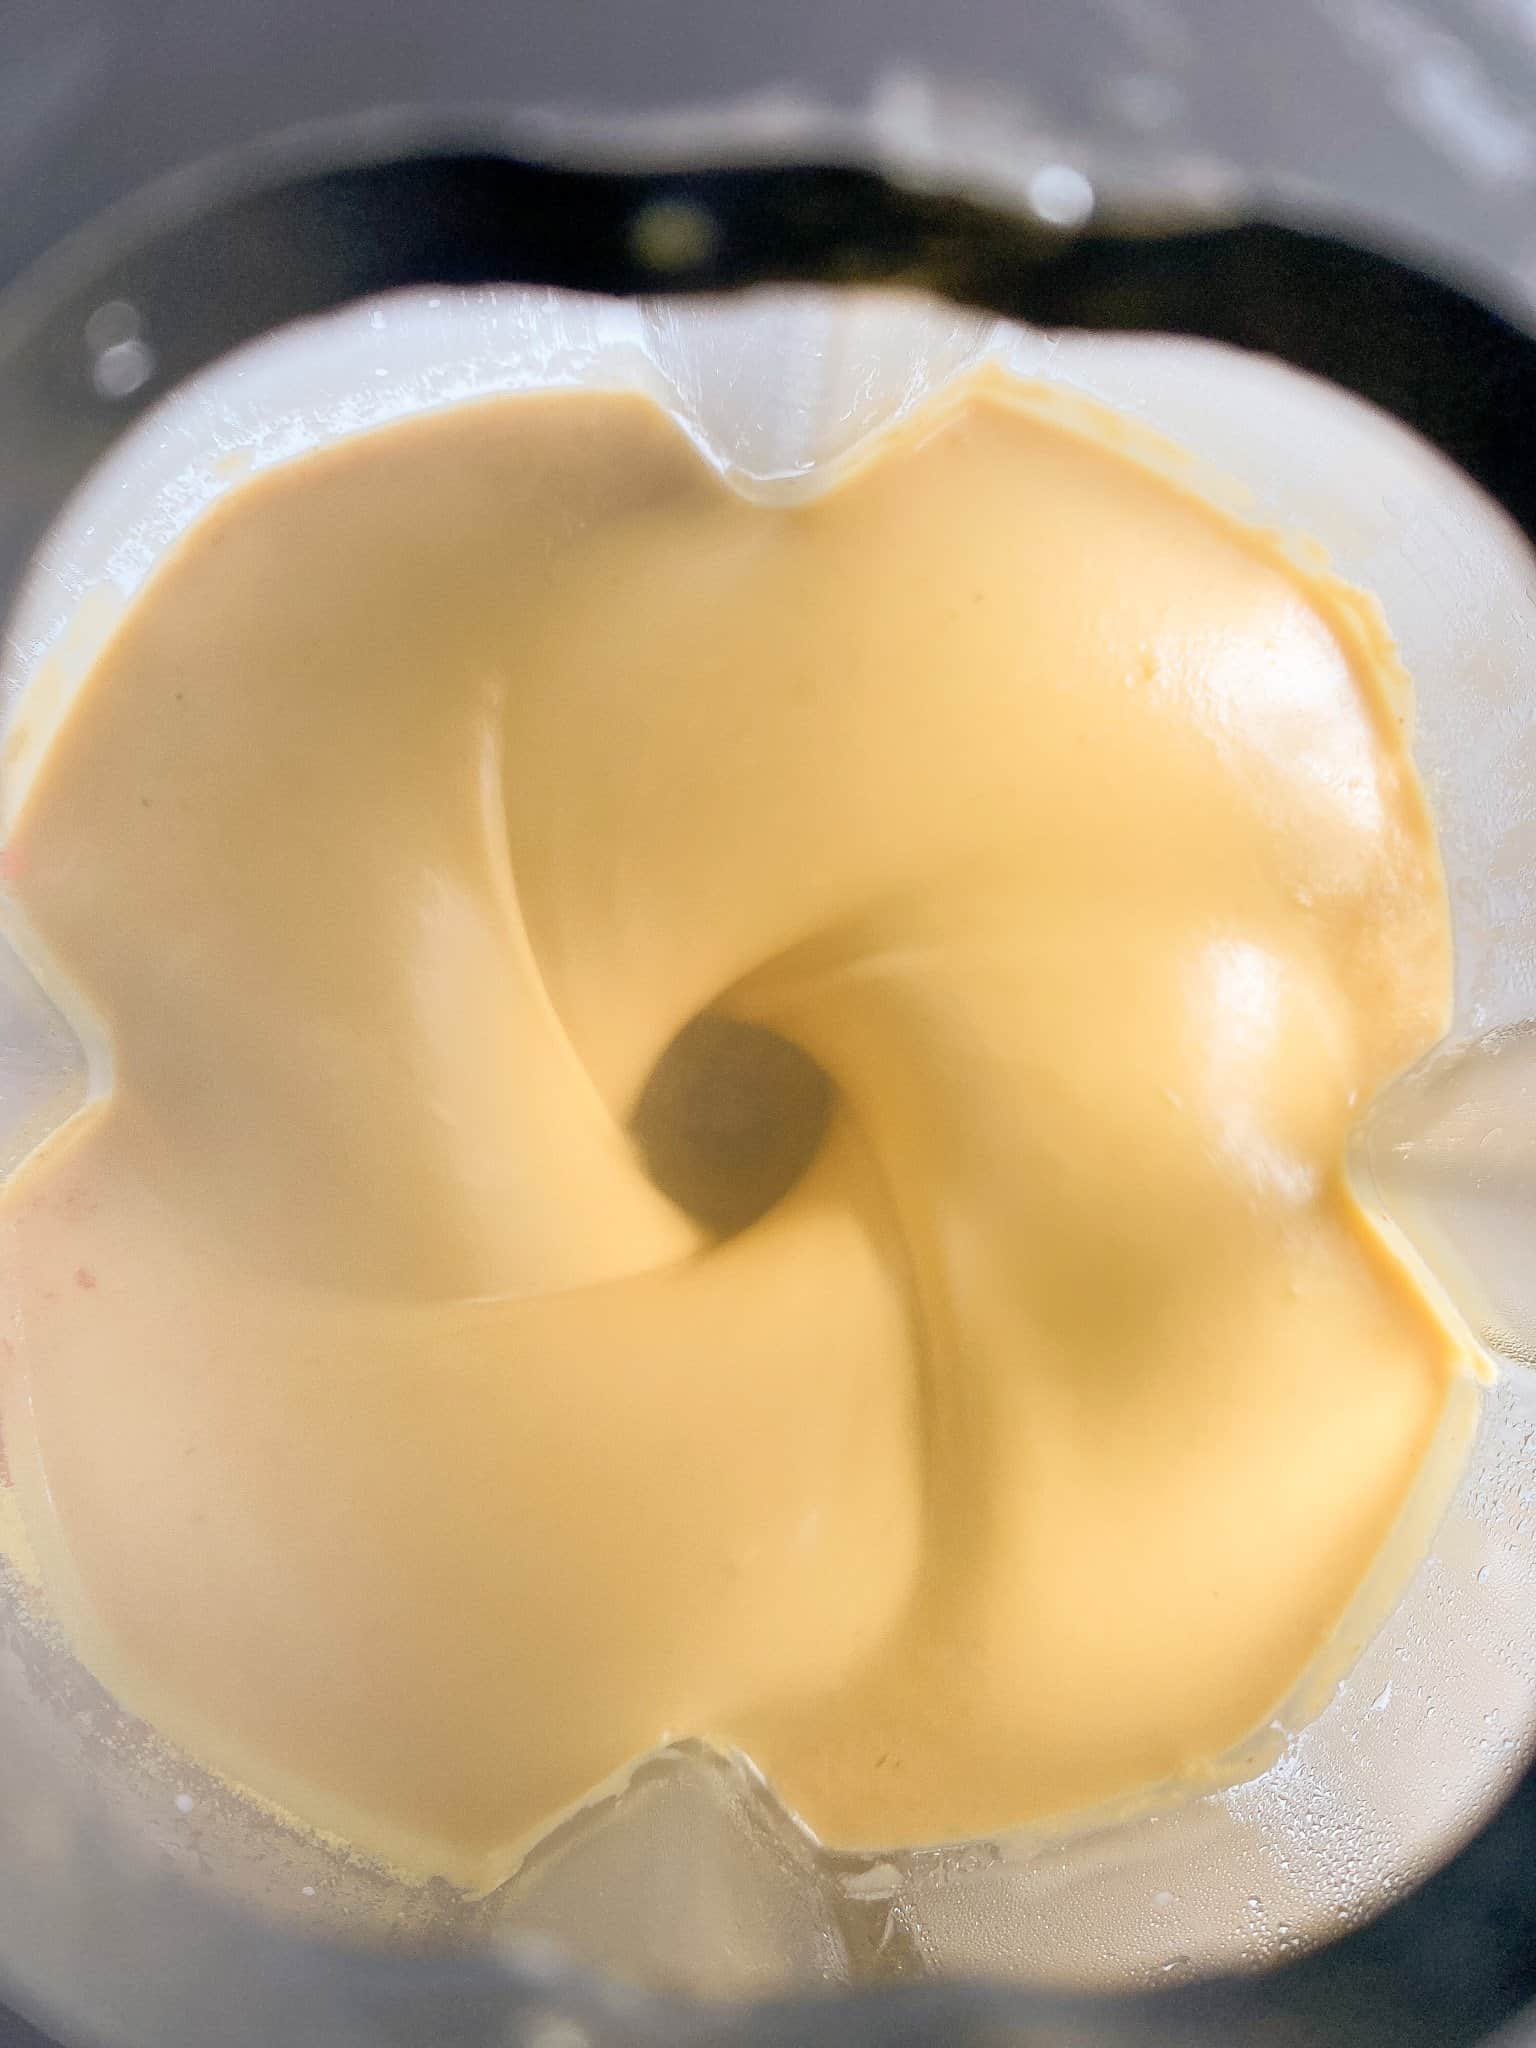 Cheese sauce blending.